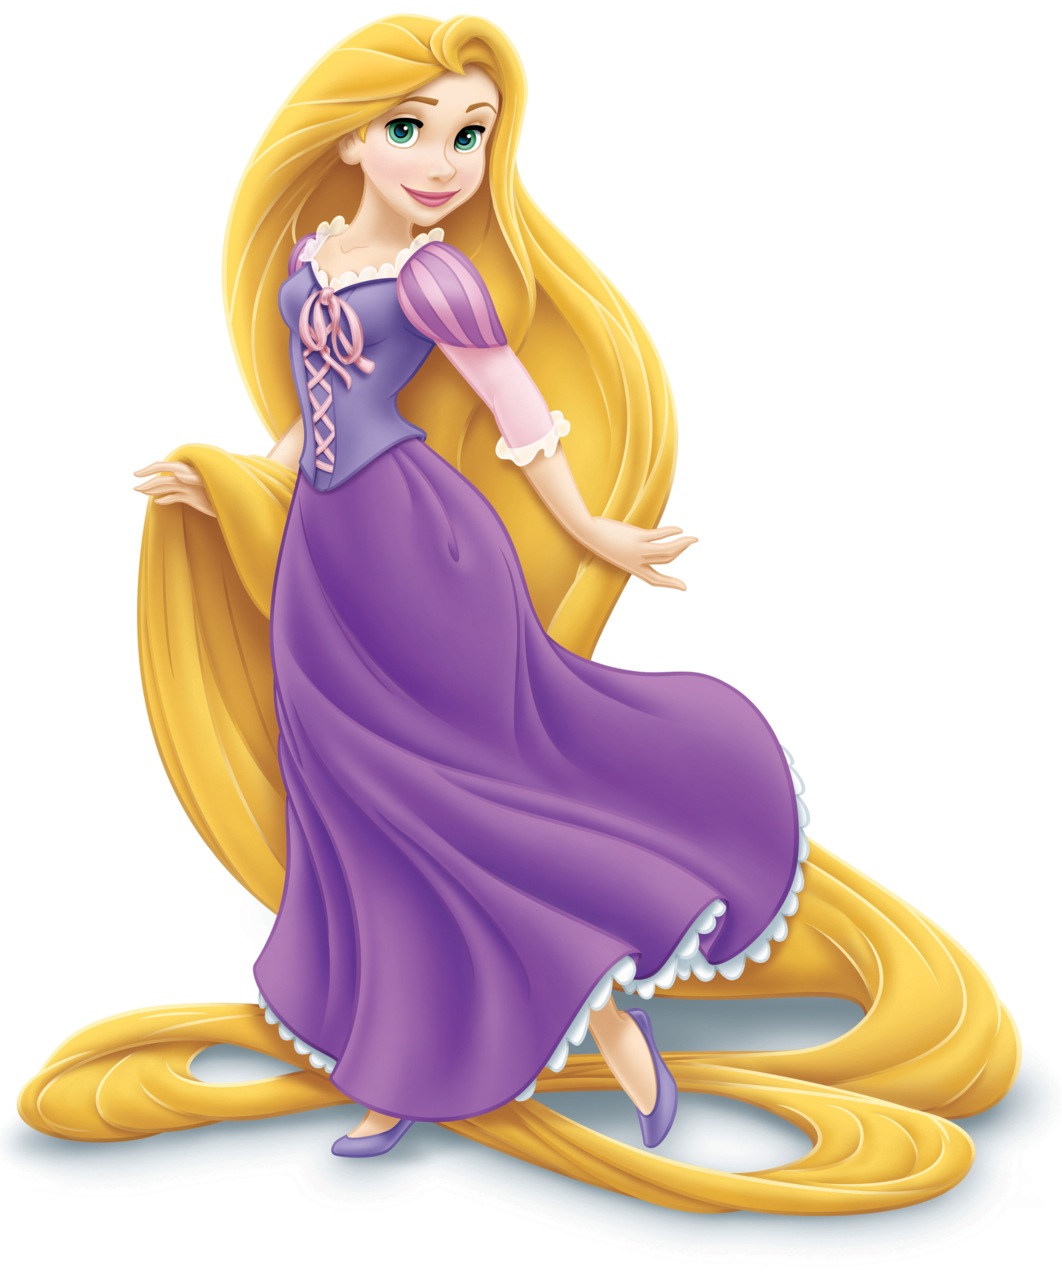 Rapunzel - Disney Wiki